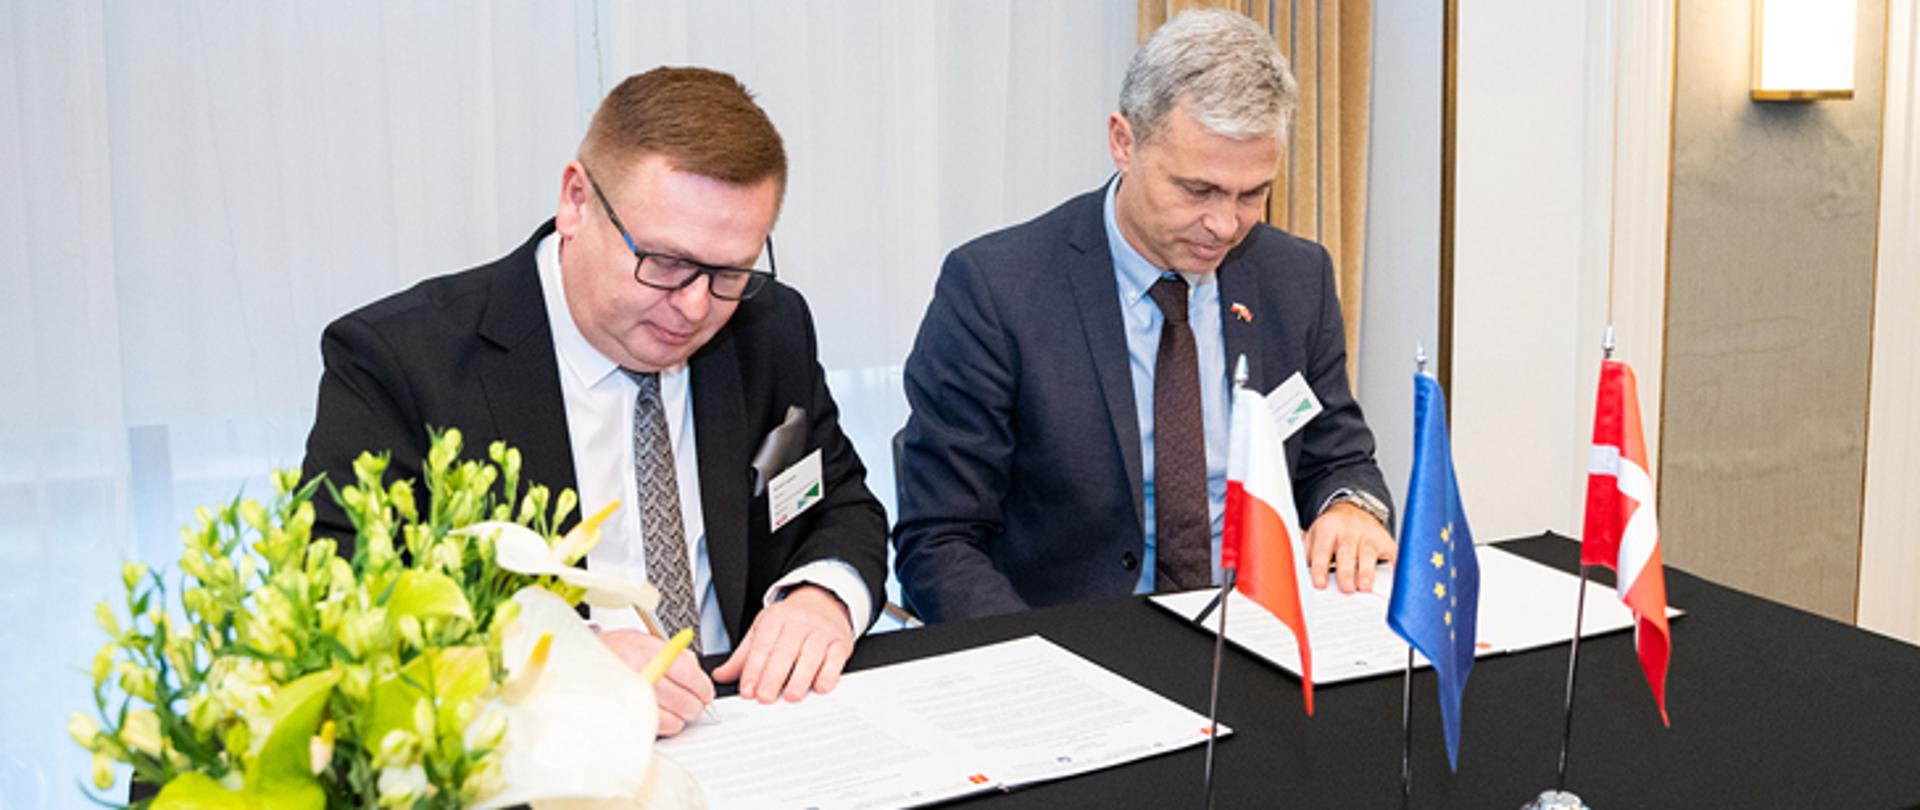 Podpisanie listu intencyjnego pomiędzy ARiMR i duńską Agencją Rolną